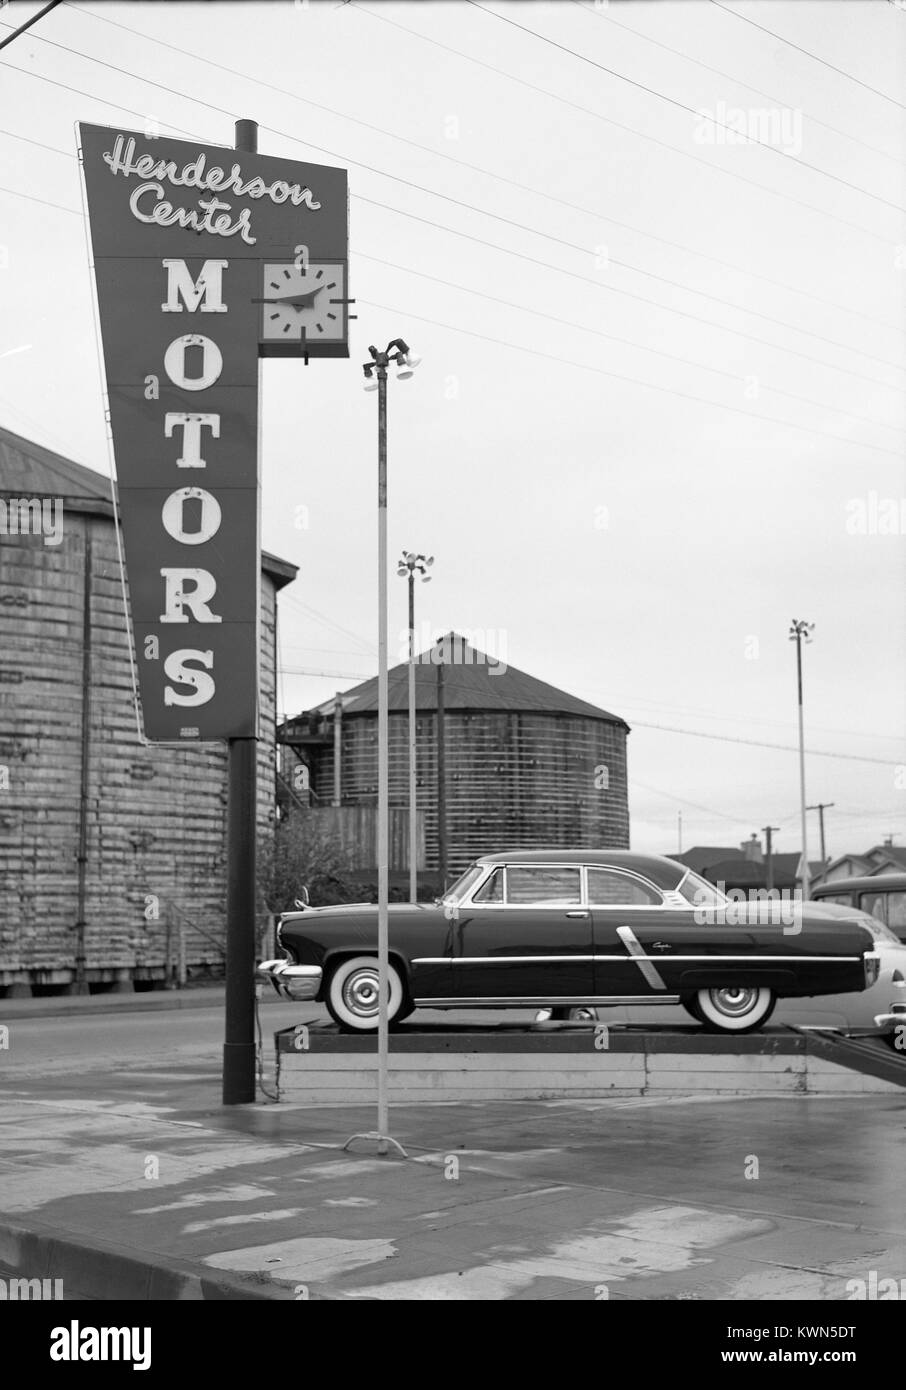 Señalización para Henderson Centro Motors, un concesionario de coches en Eureka, California, con silos y un nuevo Lincoln Capri visible del automóvil, Eureka, California, en 1950. Foto de stock